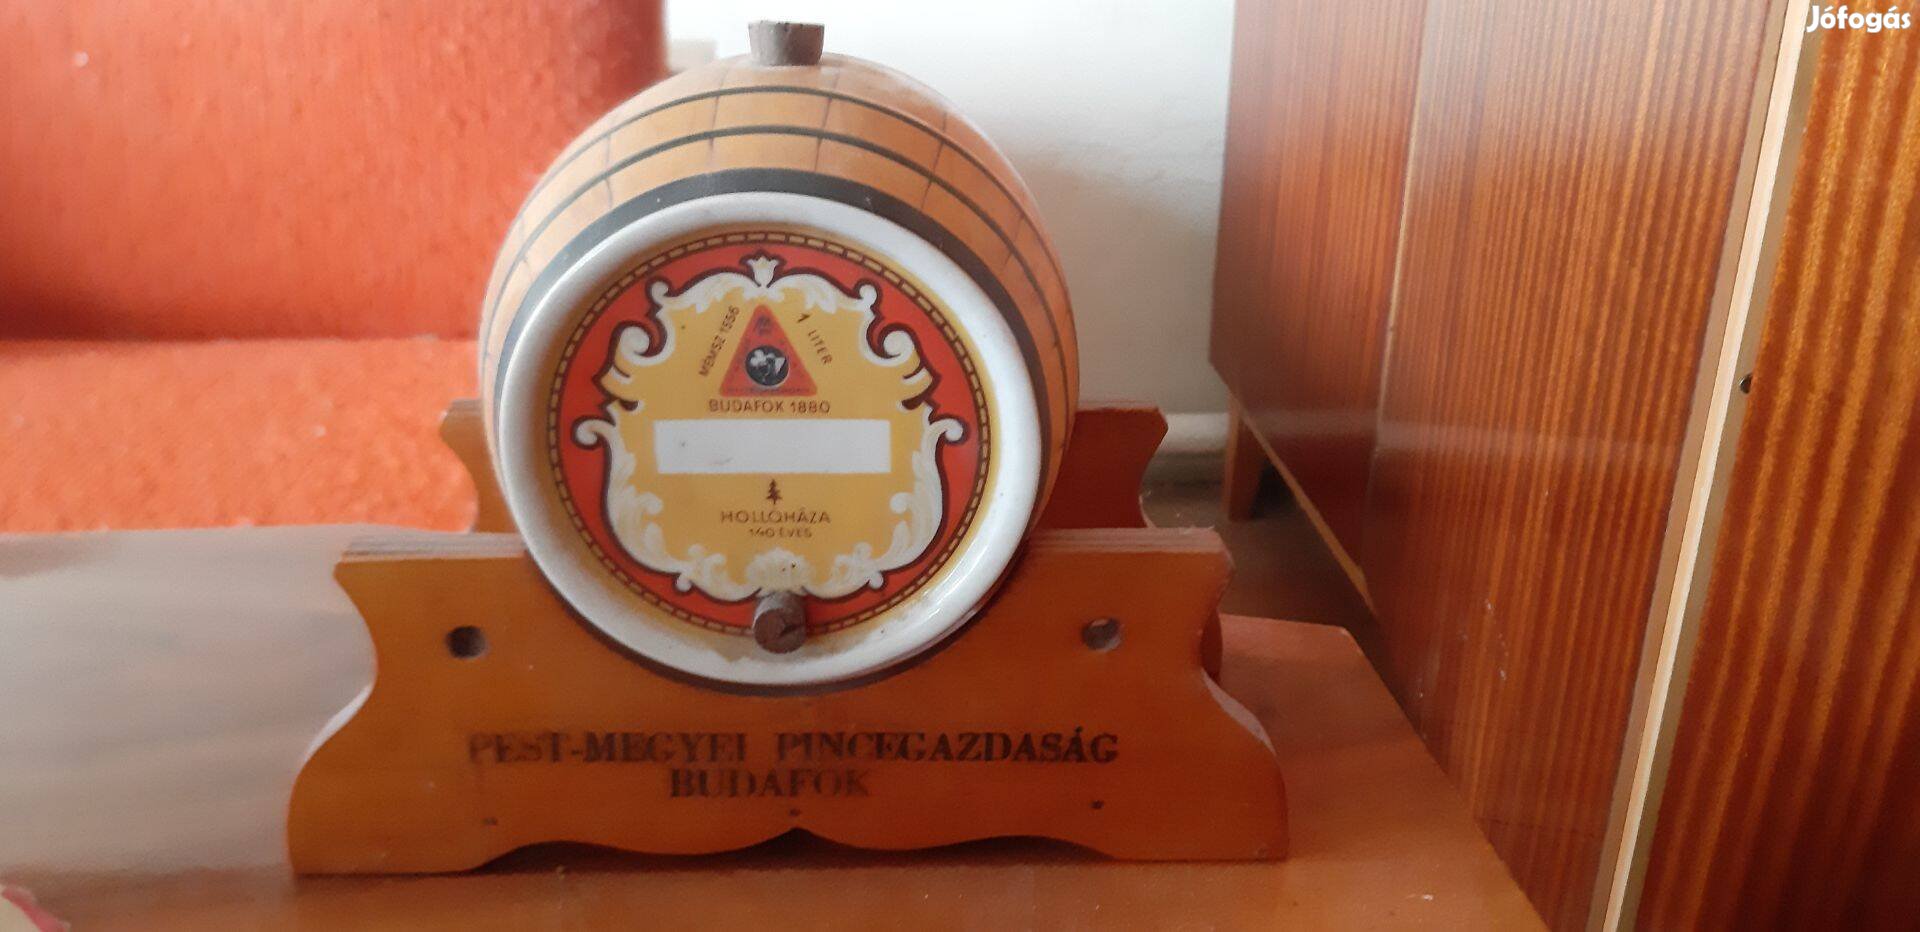 Hollóházi "Magyar Állami Pincegazdaság" jubileumi porcelán